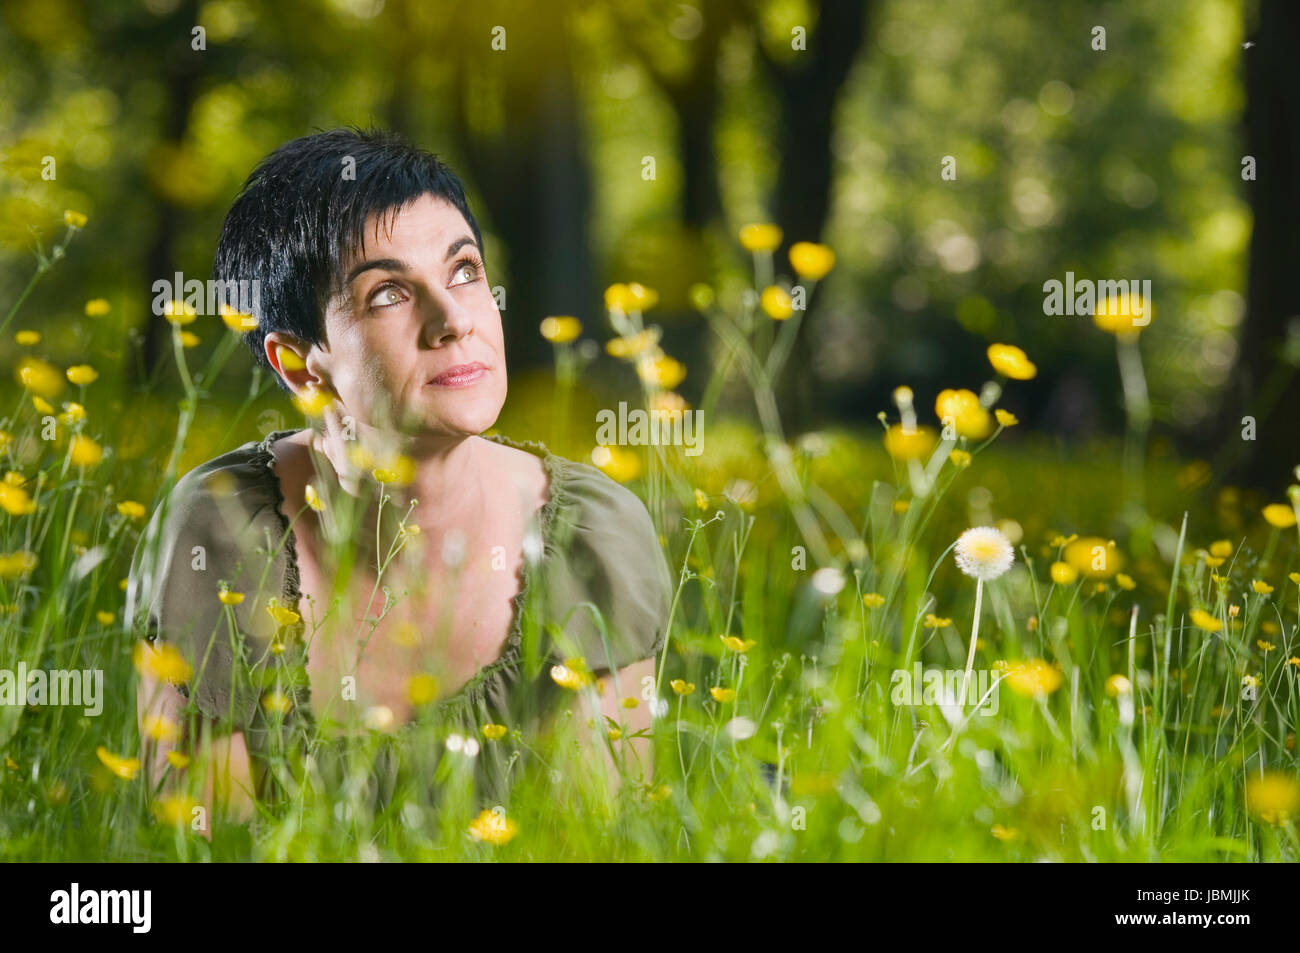 Frontale Kopf-und-Schulter-Ansicht schwarzhaarigen Frau und mittleren modifie auf dem Bauch im Gras mit gelben Blüten liegend verträumt nach rechts oben blickend Banque D'Images